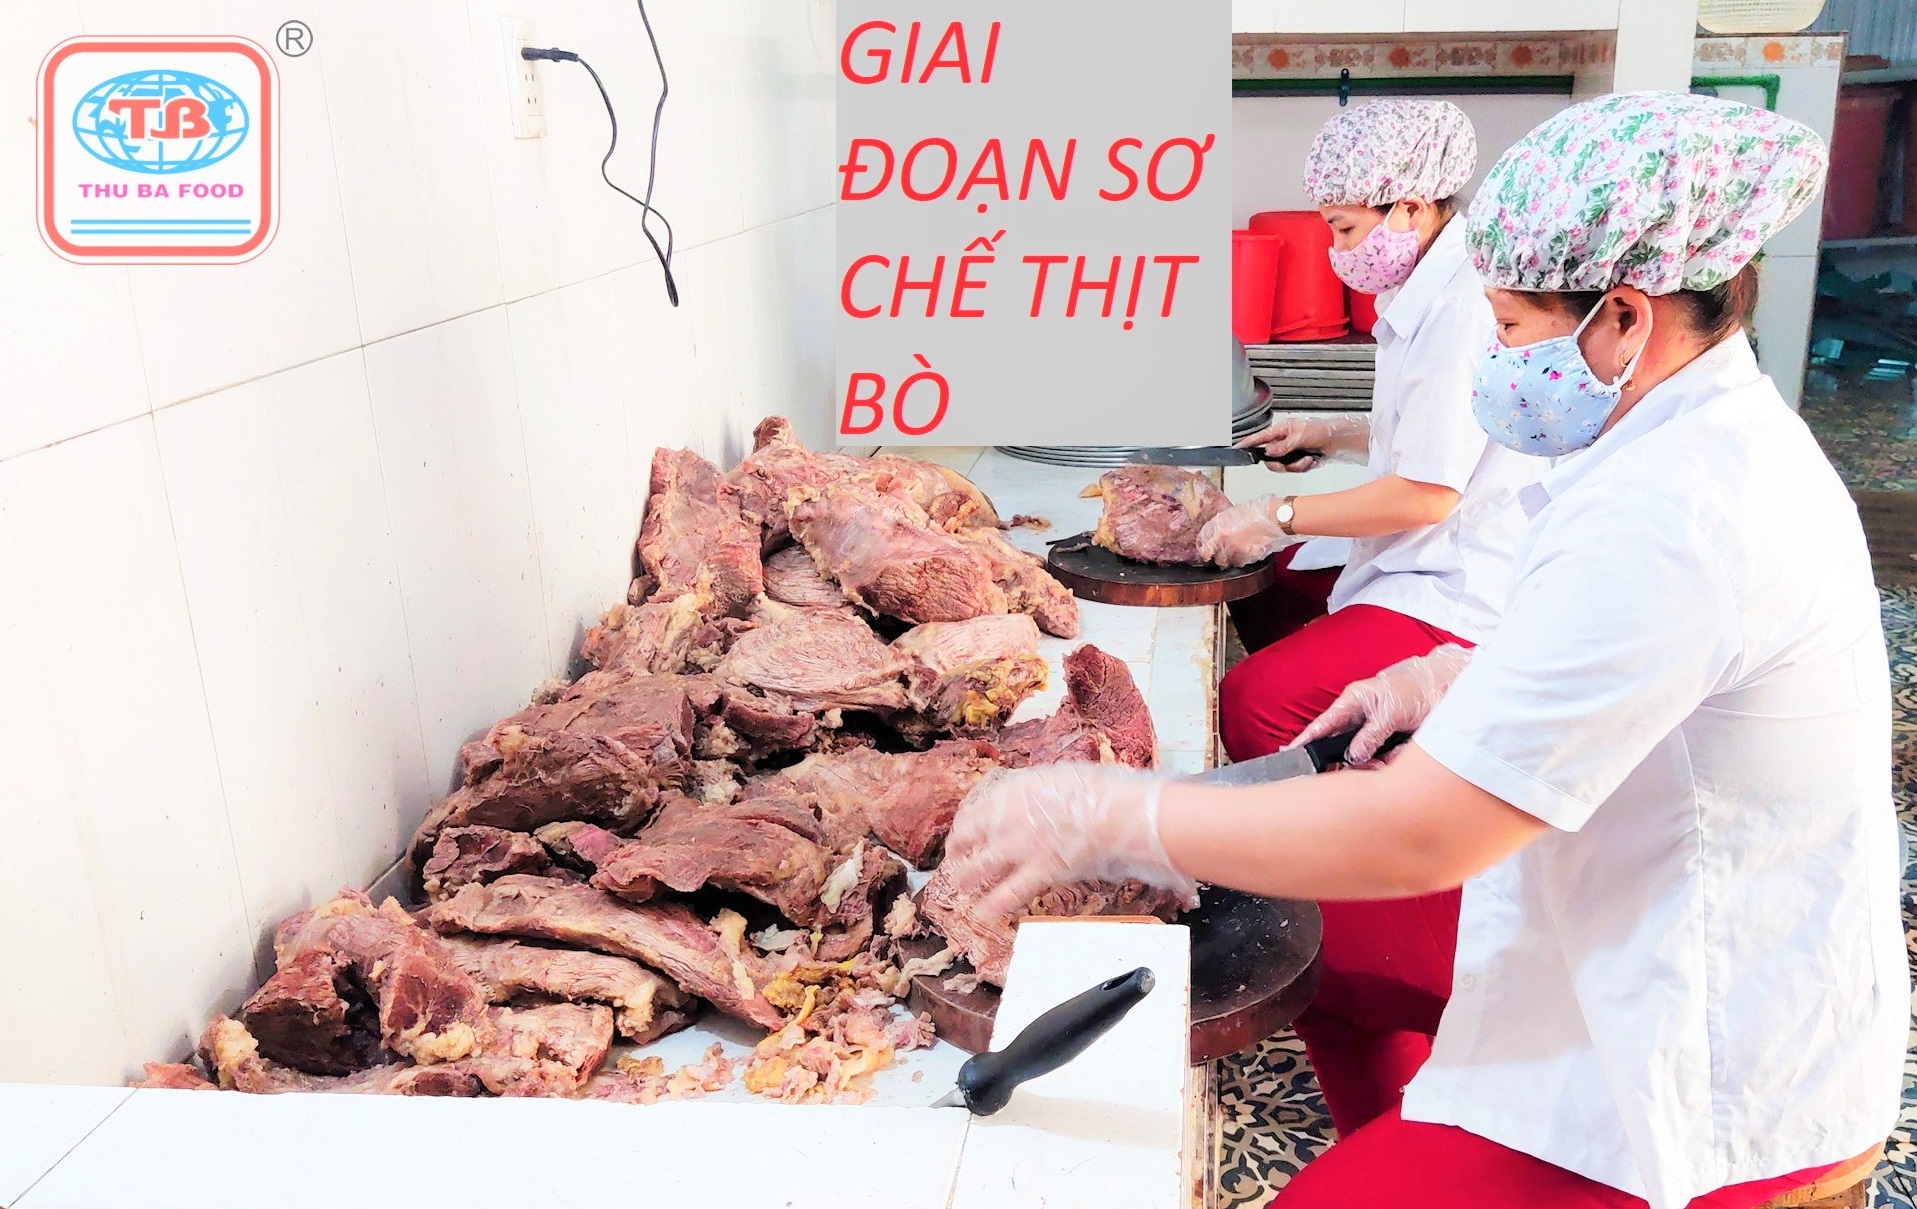 Bò Khô MIẾNG mềm Thu Ba hàng Việt nam chất lượng cao 100% loại 100 gram, đặc sản Quảng Ngãi, miền Trung